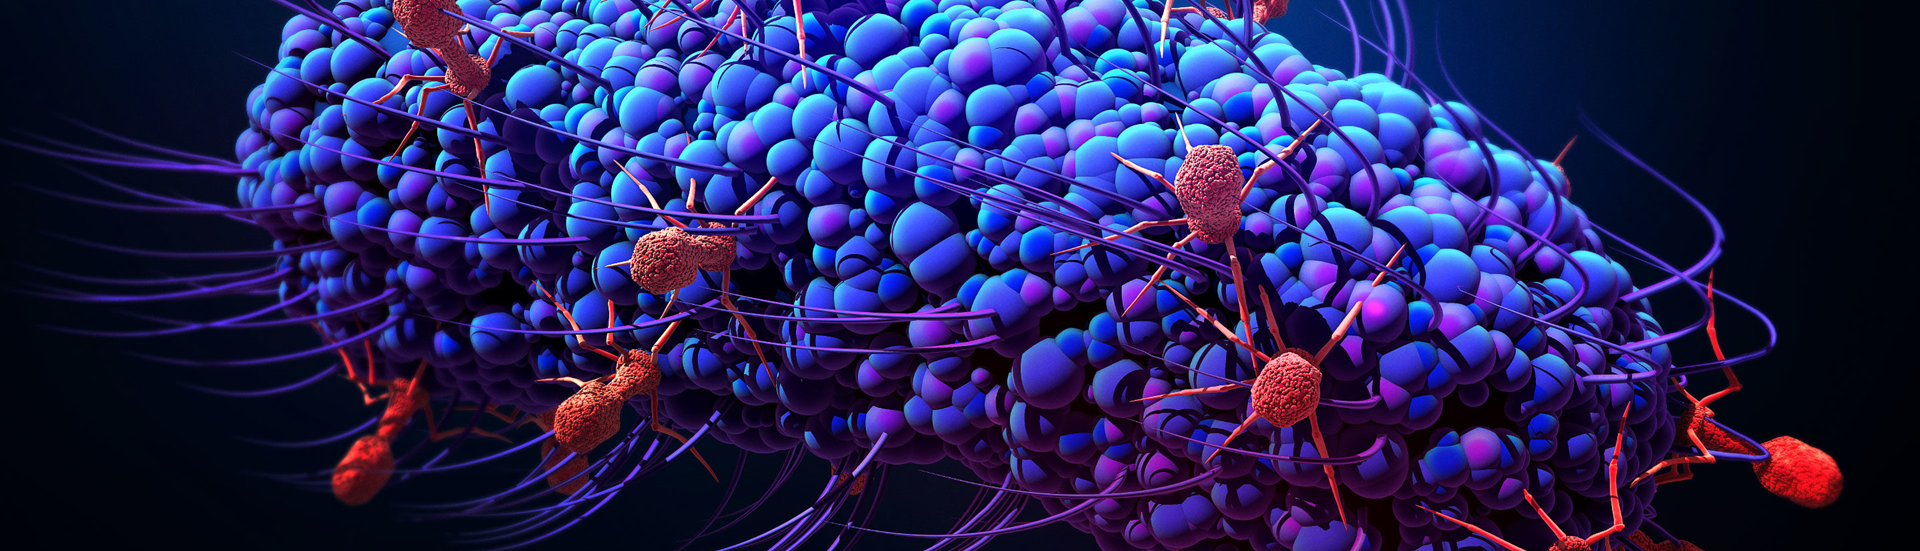 Topbillede med grafisk fremstilling af bakterie kultur